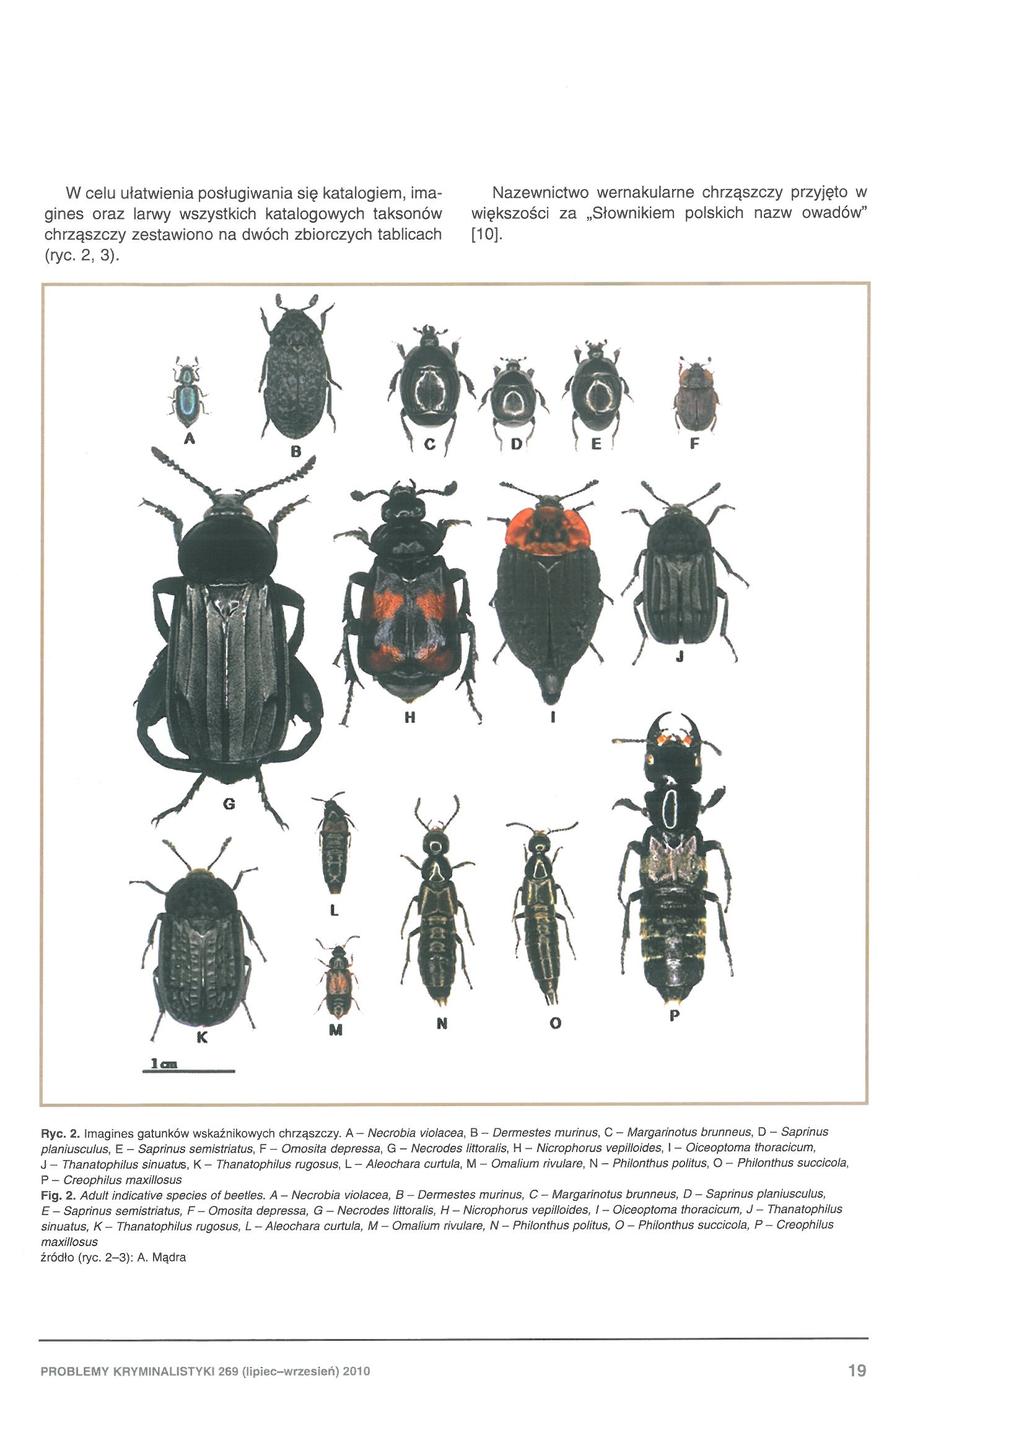 W celu ułatwienia pos ługiwania się katalogie m, oraz larwy wszystkich katalogowych taksonów chrząszczy zestawiono na dwóch zbiorczych tablicach (ryc. 2, 3).